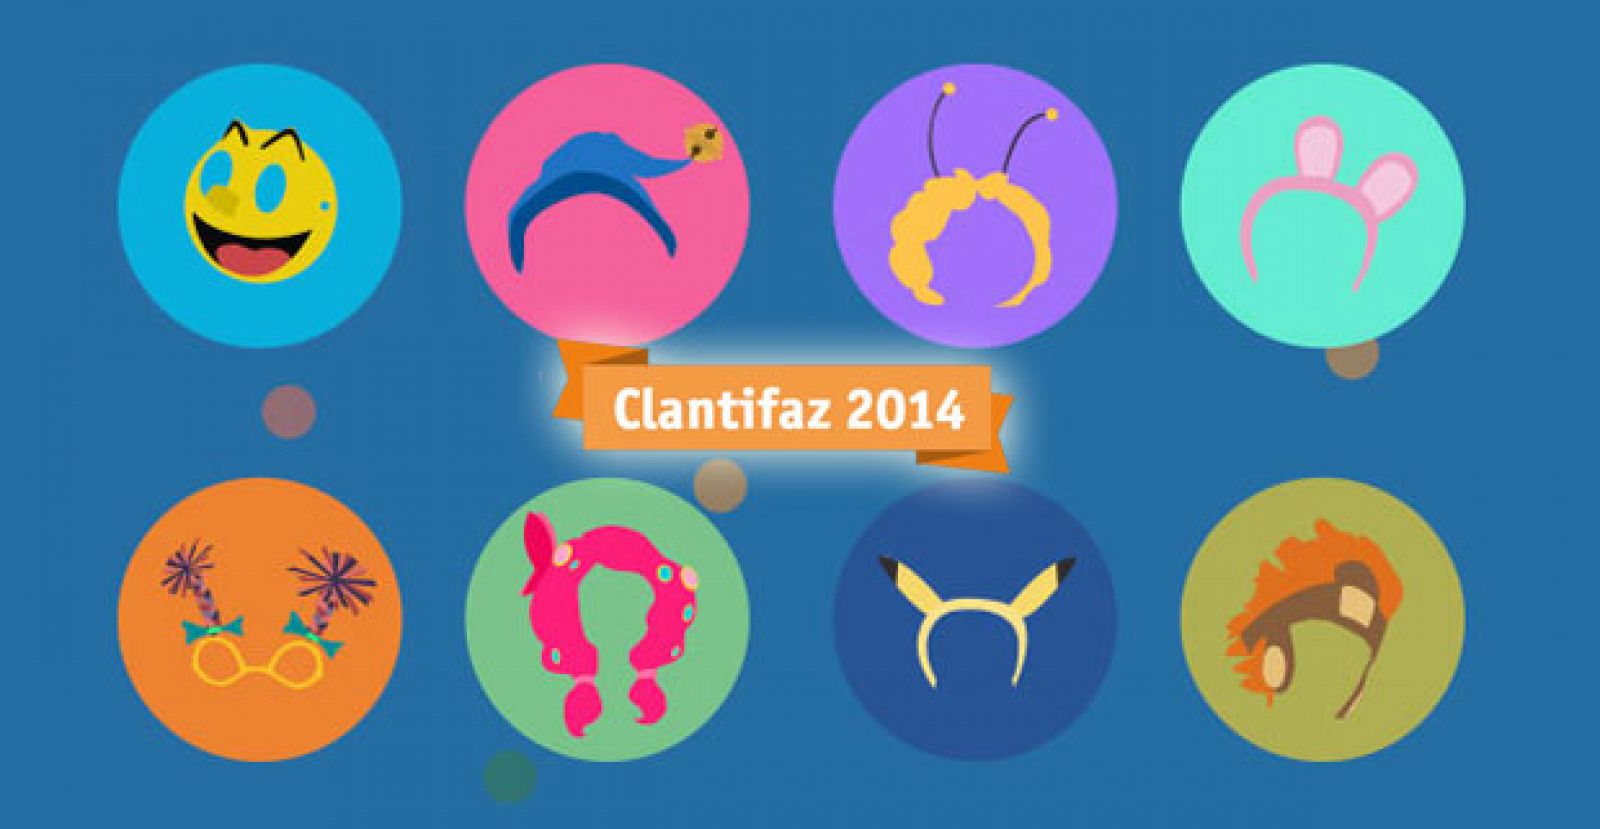 Clantifaz 2014